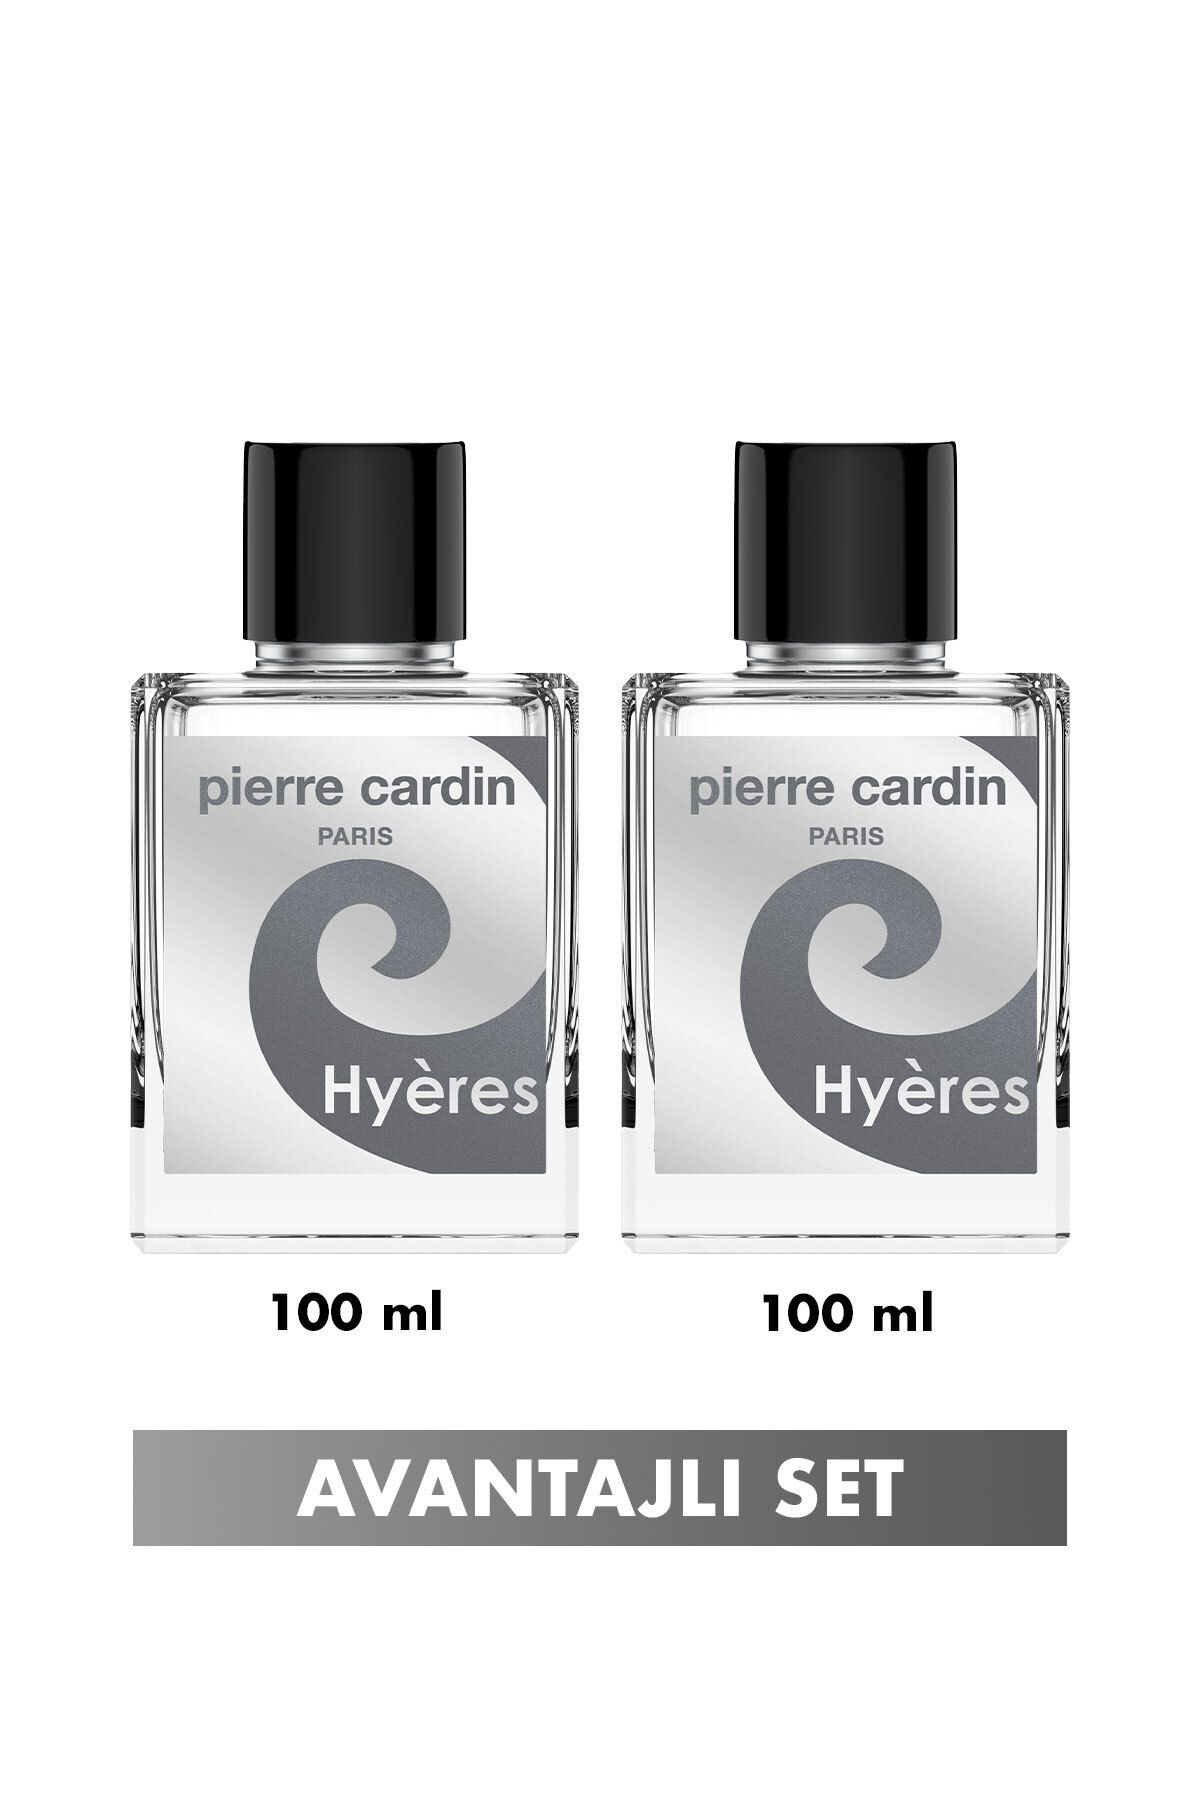 Pierre Cardin Hyeres Edt 100 ml Ikili Erkek Parfüm Seti Stcc021305